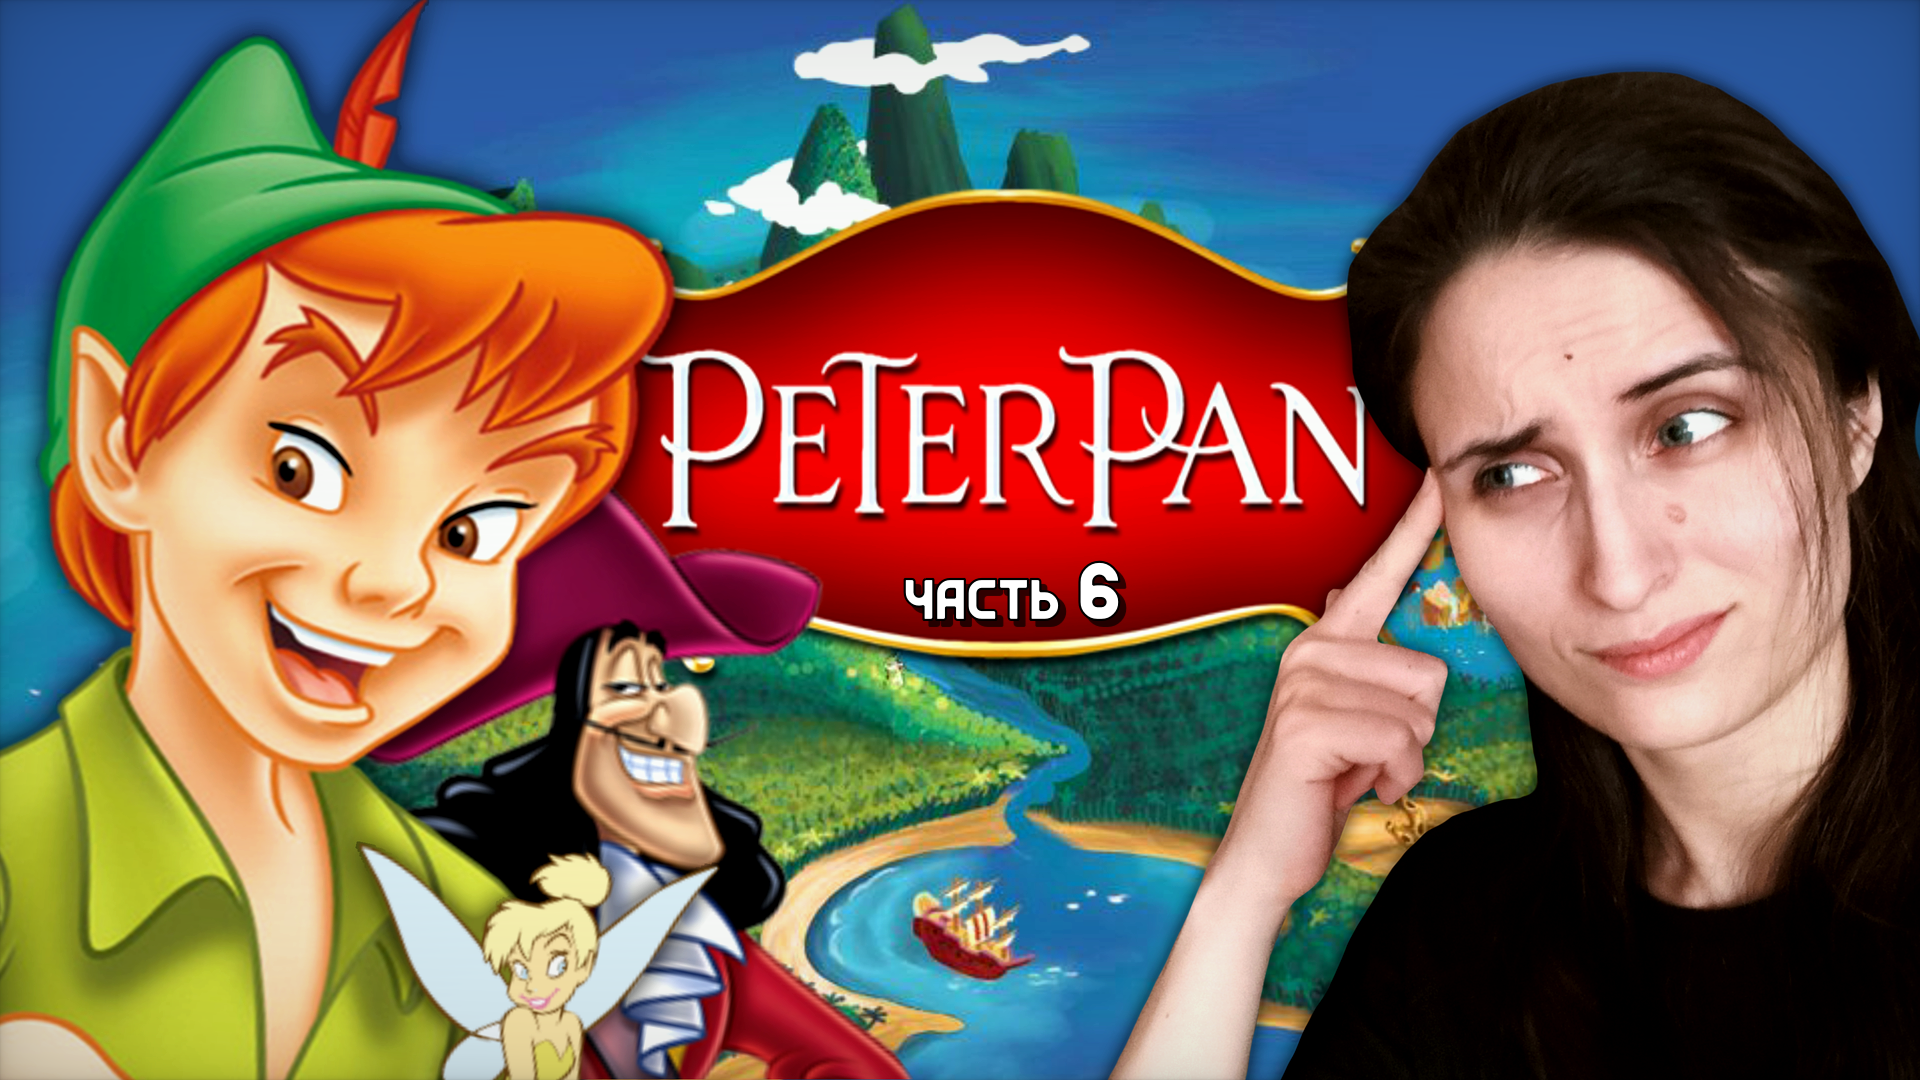 МНОГО ДУЕМ НА УРОВНЕ-ЖЕСТИ И СПАСАЕМ ЛИСЁНКА! ➤ Peter Pan: Return to Neverland [часть 6, PS1]